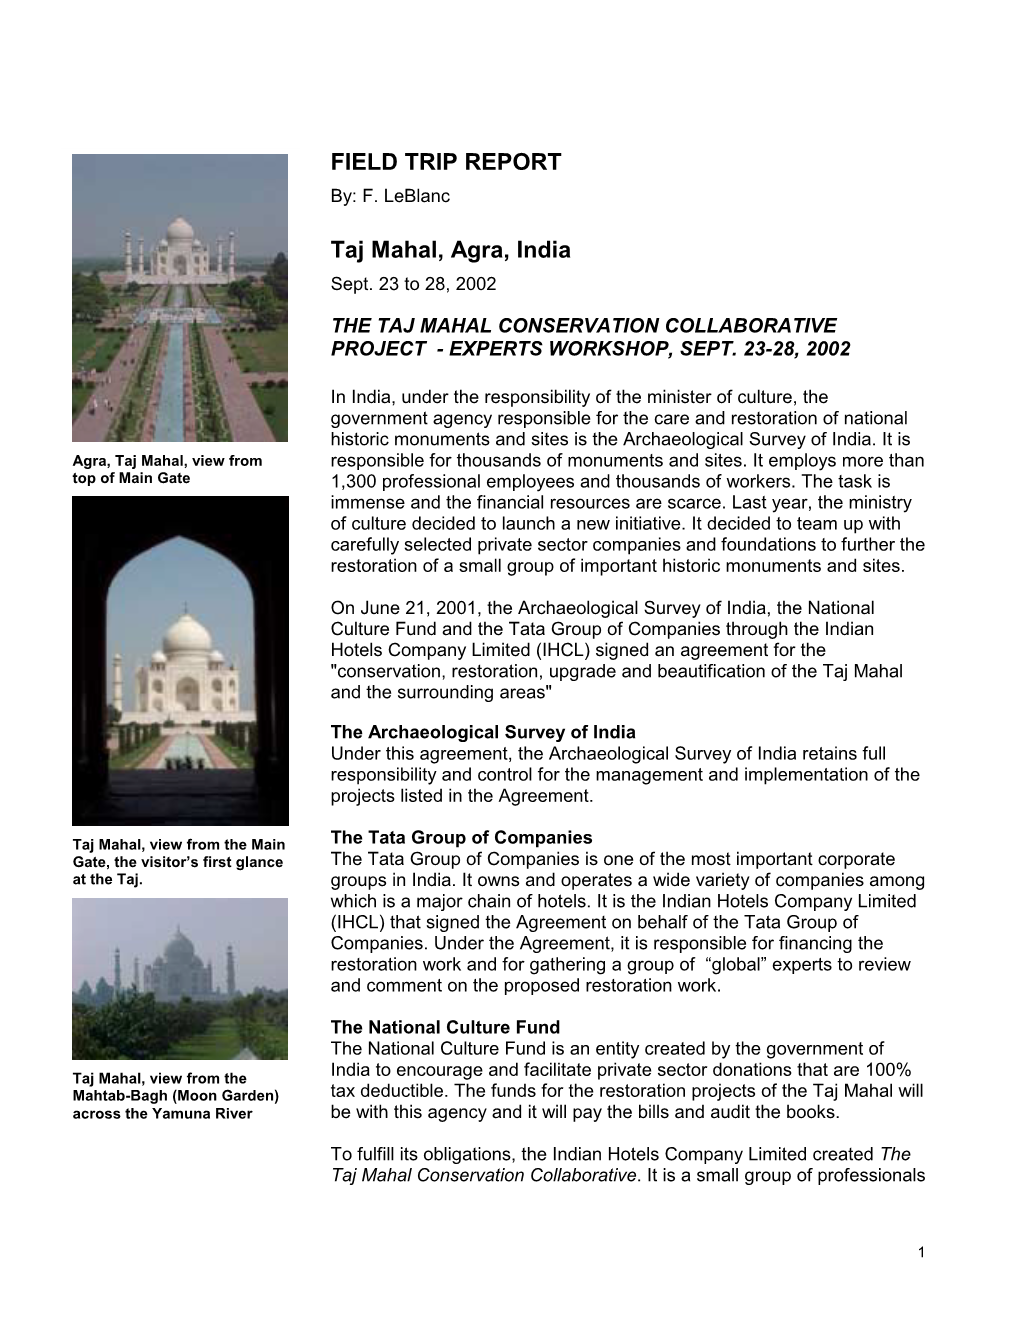 FIELD TRIP REPORT Taj Mahal, Agra, India